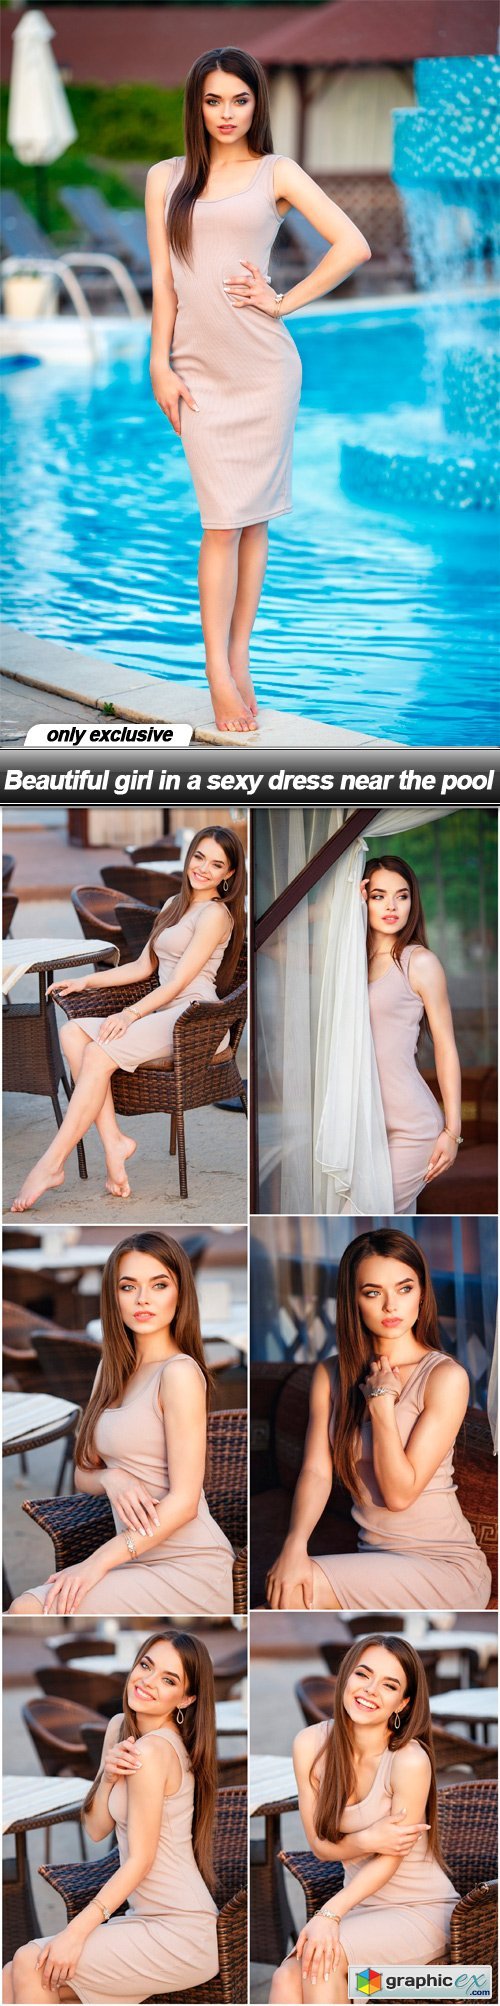 Beautiful girl in a sexy dress near the pool - 7 UHQ JPEG